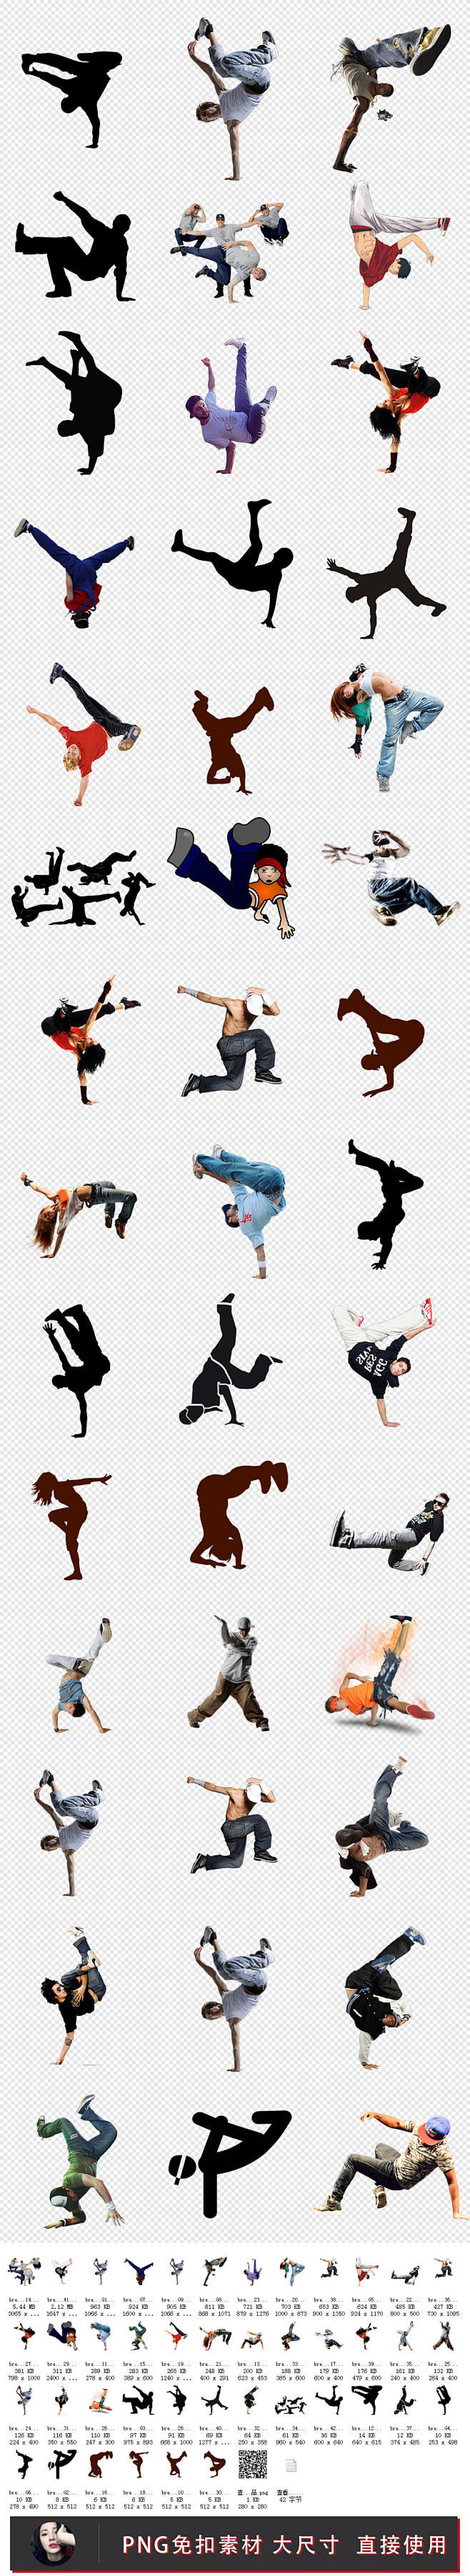 舞蹈街舞剪影动作海报人物字体PNG素材